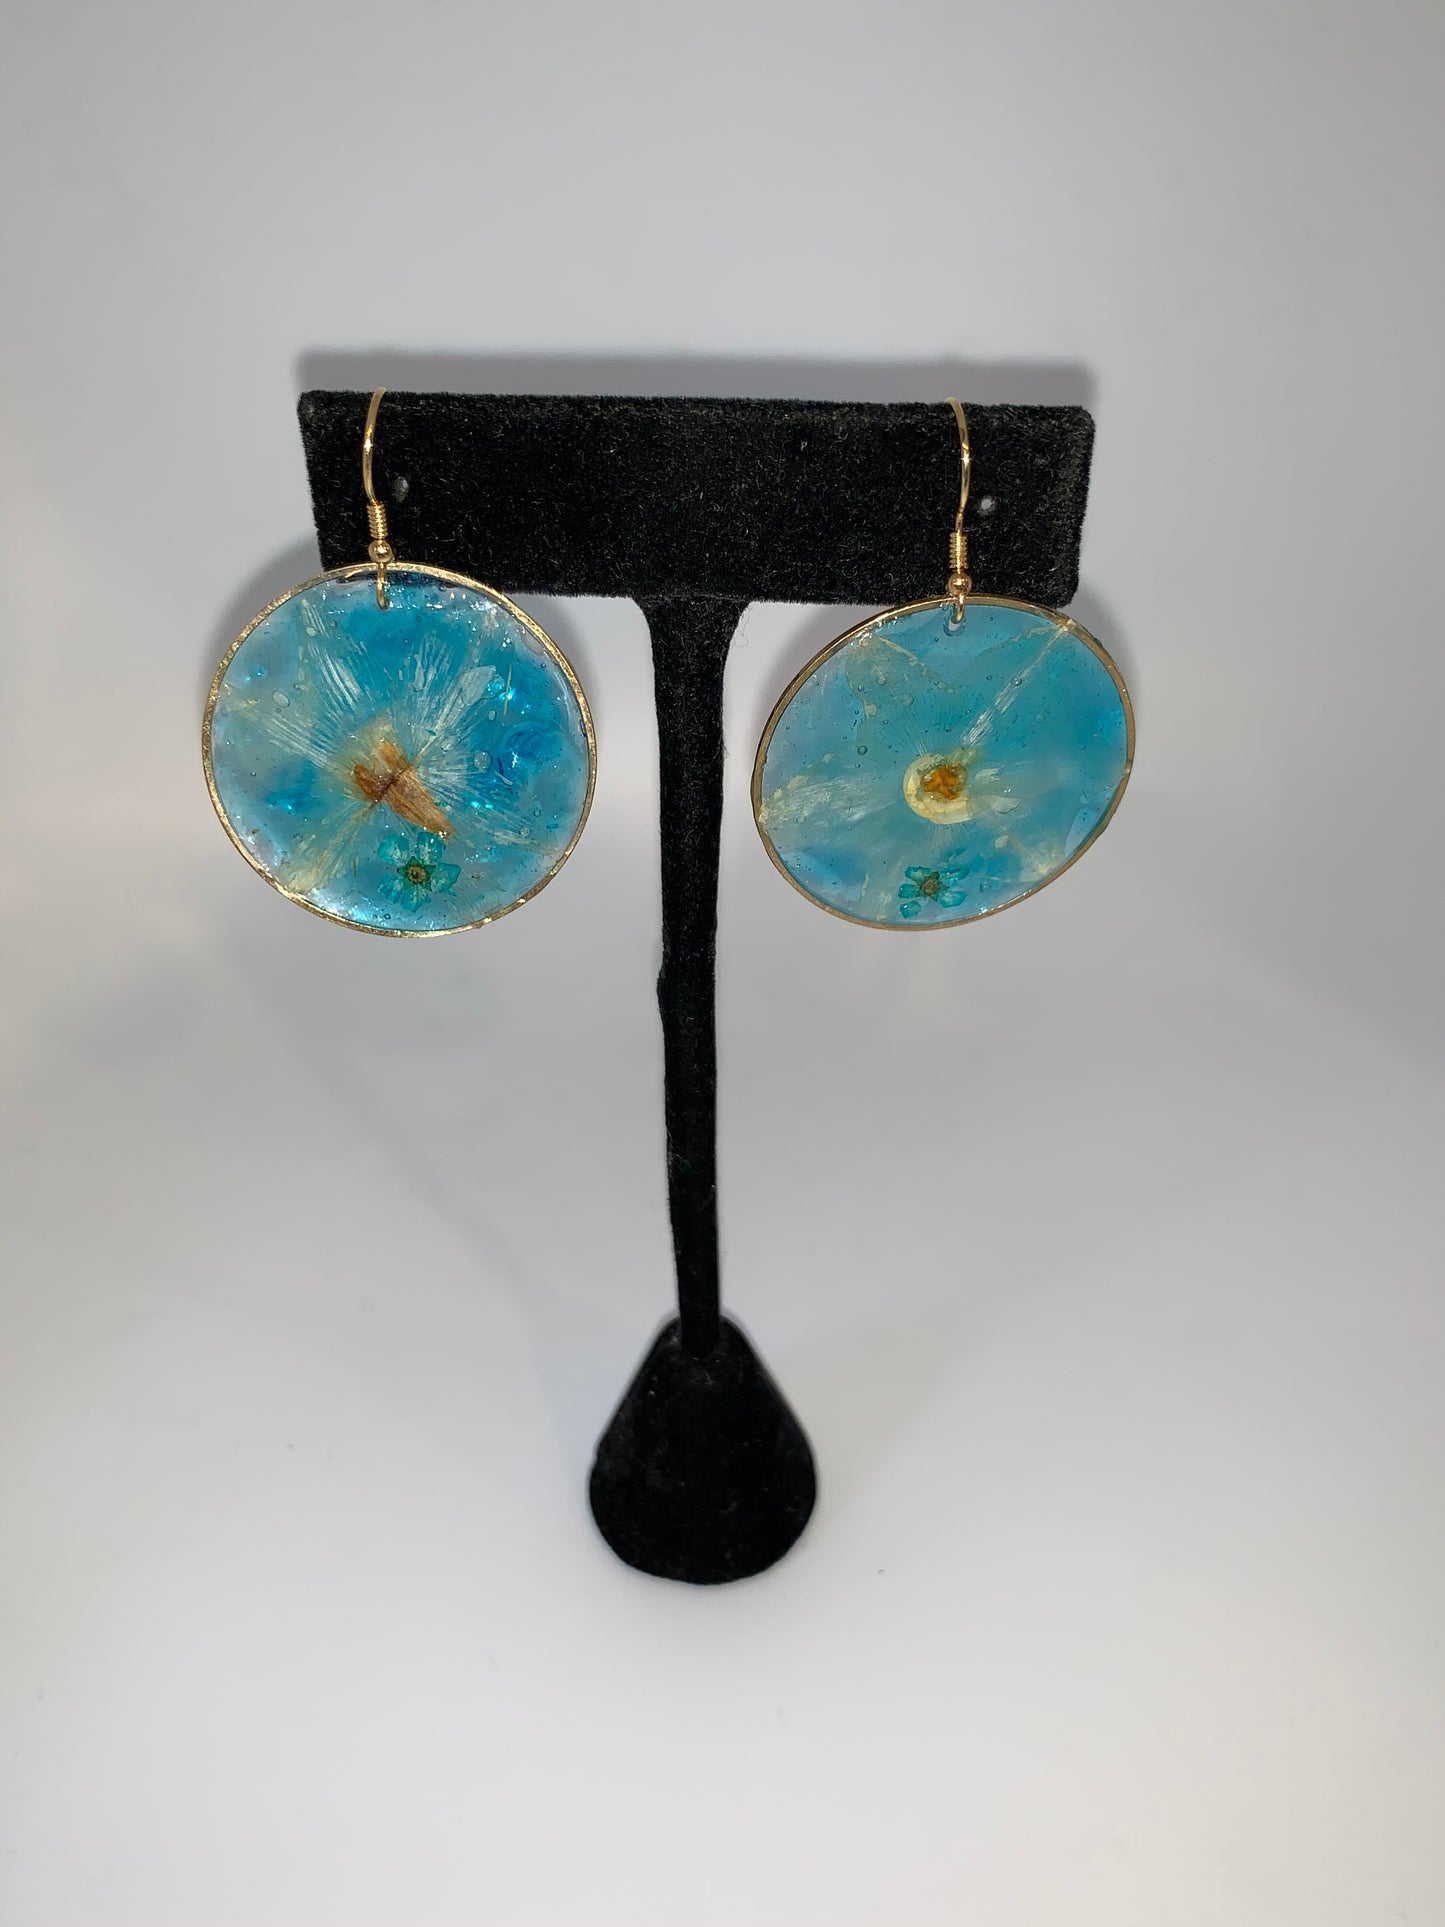 Soleil et Verre Earrings - daffodil blue